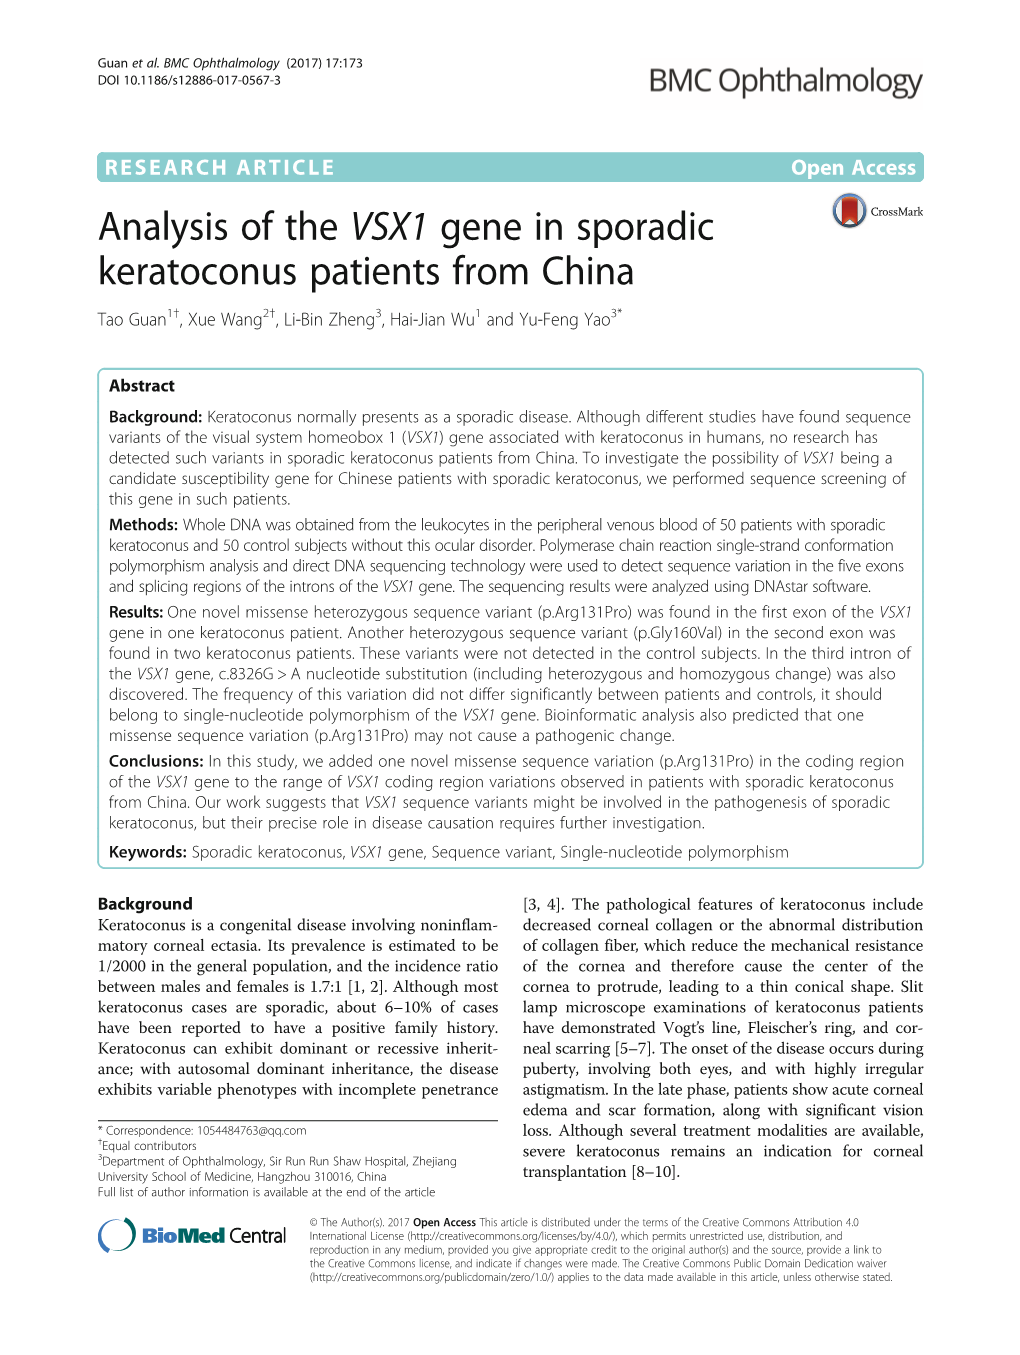 Analysis of the VSX1 Gene in Sporadic Keratoconus Patients from China Tao Guan1†, Xue Wang2†, Li-Bin Zheng3, Hai-Jian Wu1 and Yu-Feng Yao3*